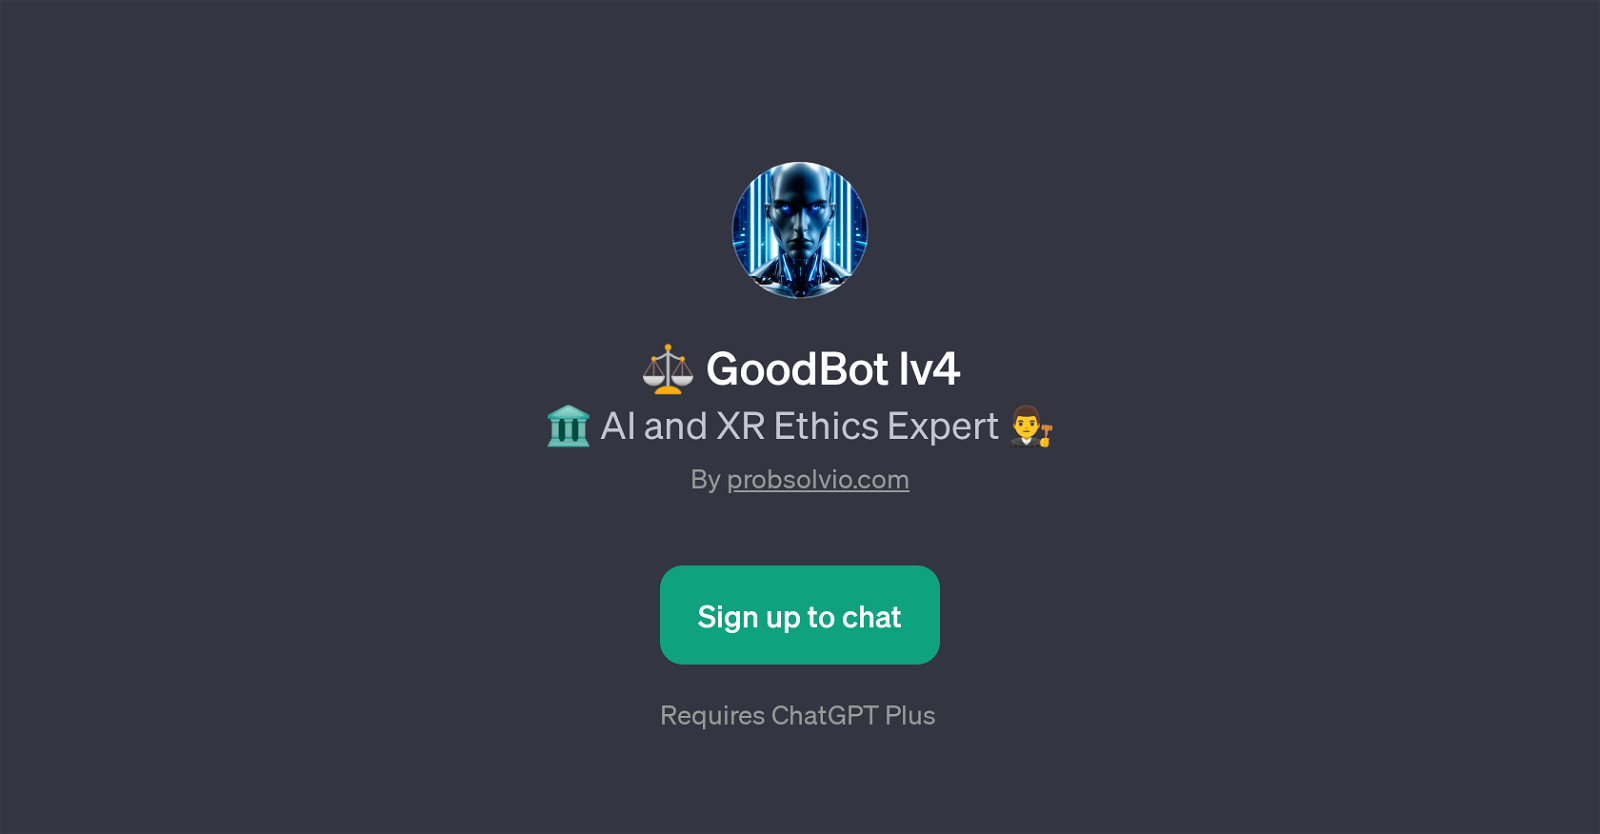 GoodBot lv4 website